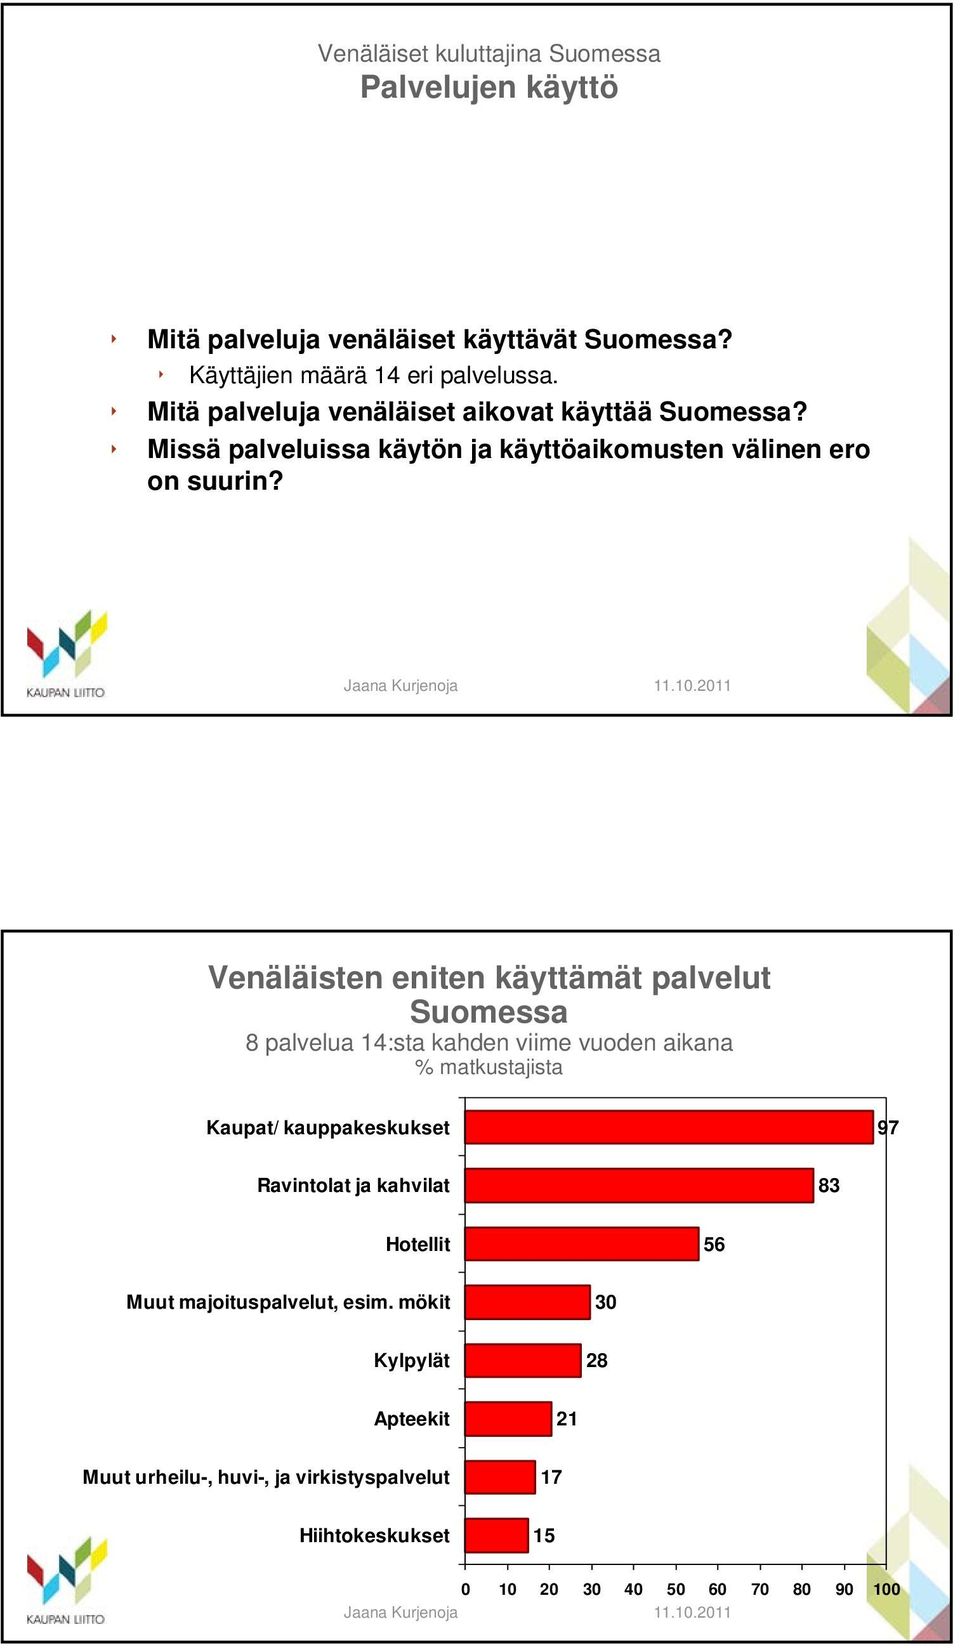 Venäläisten eniten käyttämät palvelut Suomessa 8 palvelua 14:sta kahden viime vuoden aikana % matkustajista Kaupat/ kauppakeskukset 97 Ravintolat